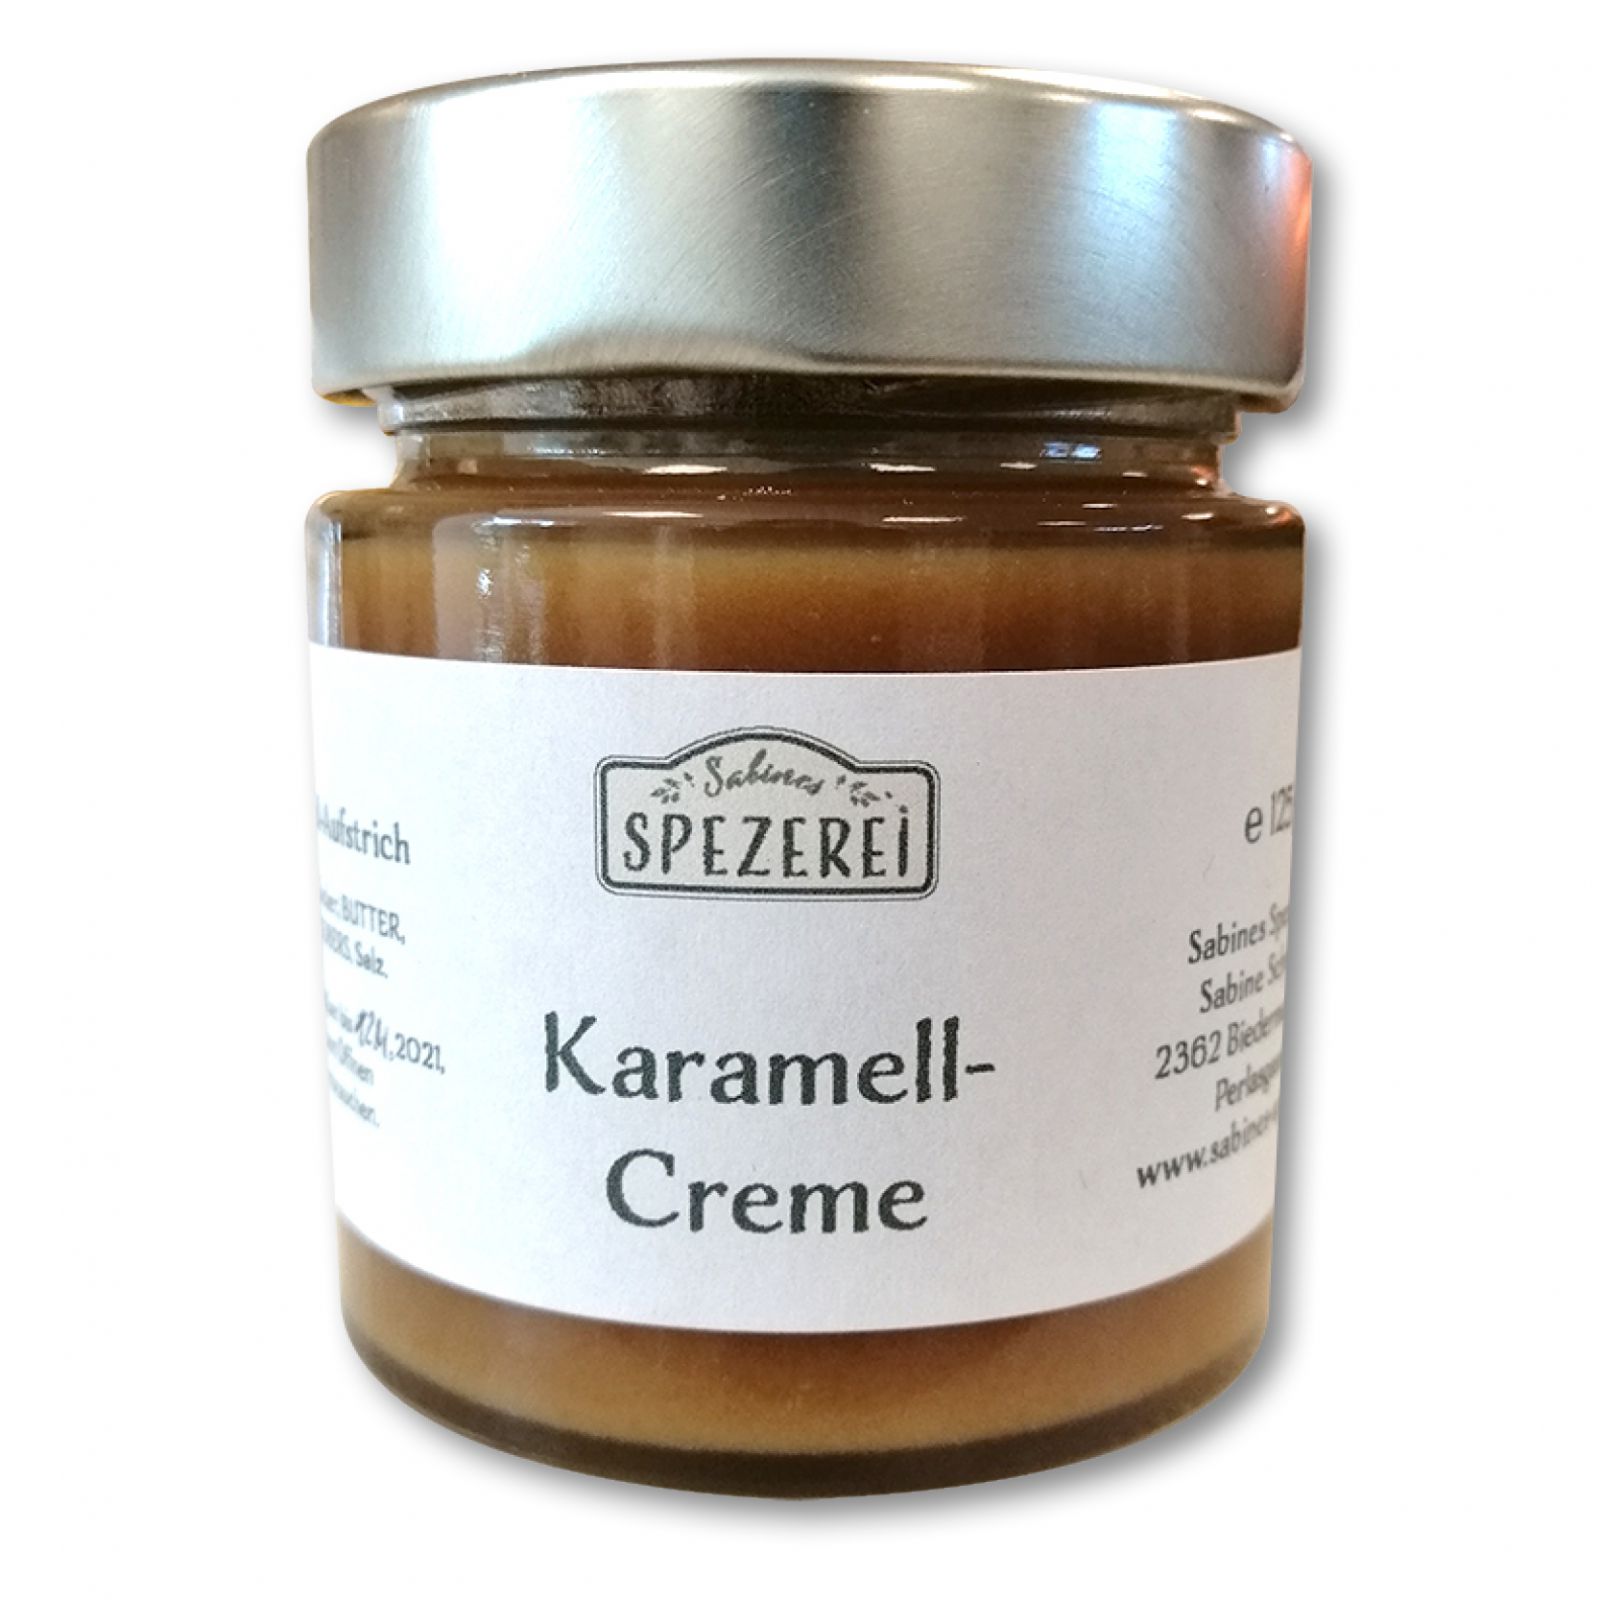 Karamell-Creme - Sabines Spezerei - Bauernladen